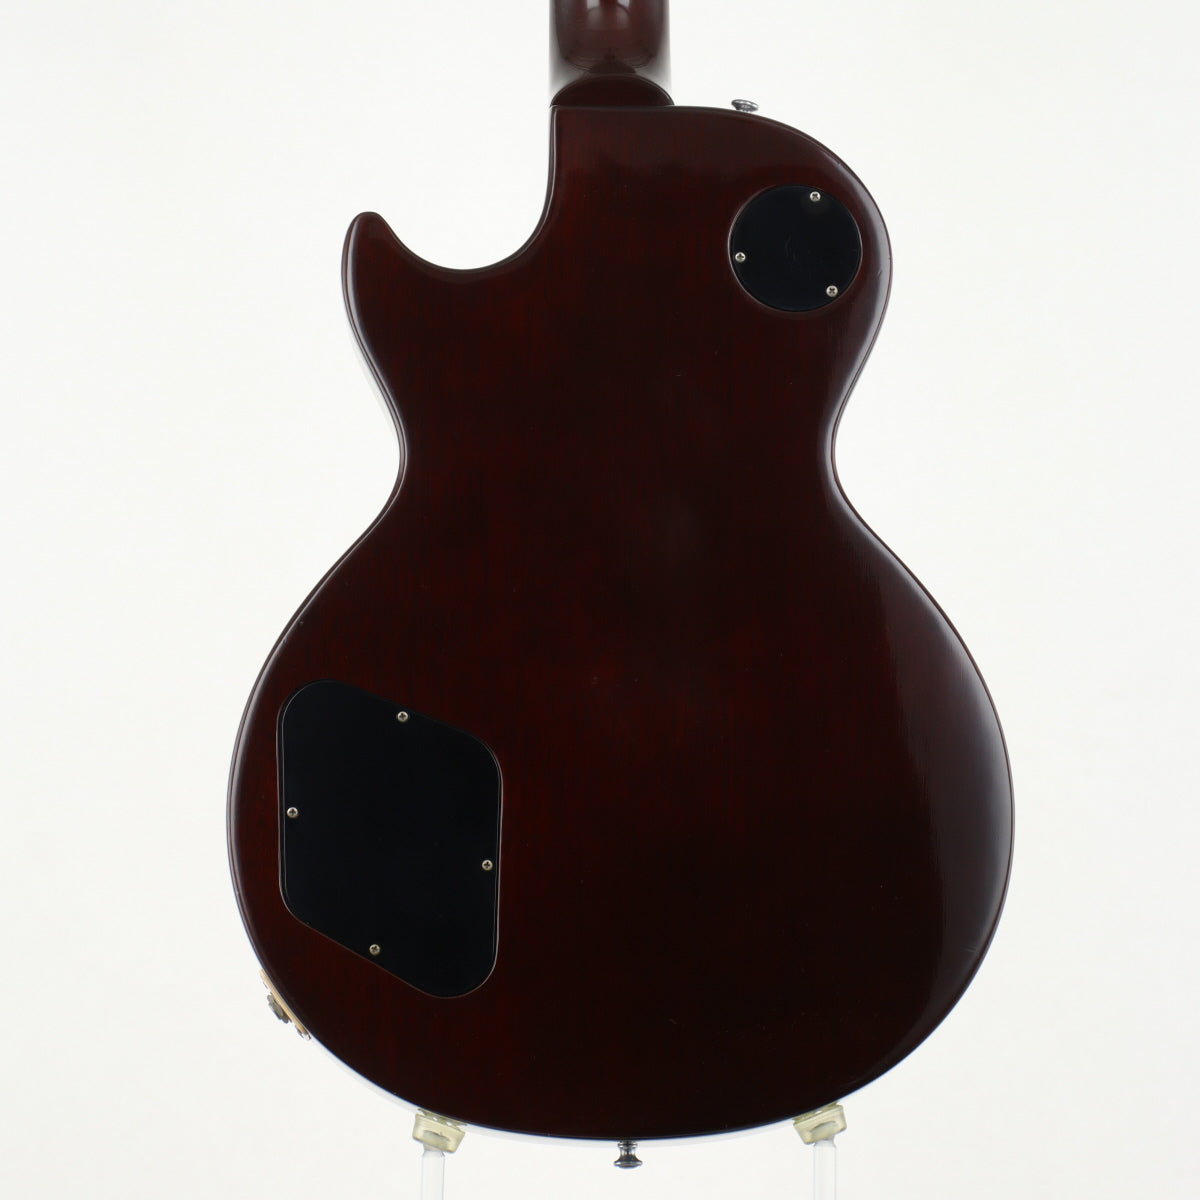 [SN 9 7106] USED Gibson Custom Shop / HC 1959 Les Paul Standard Reissue Dessert Burst [20]